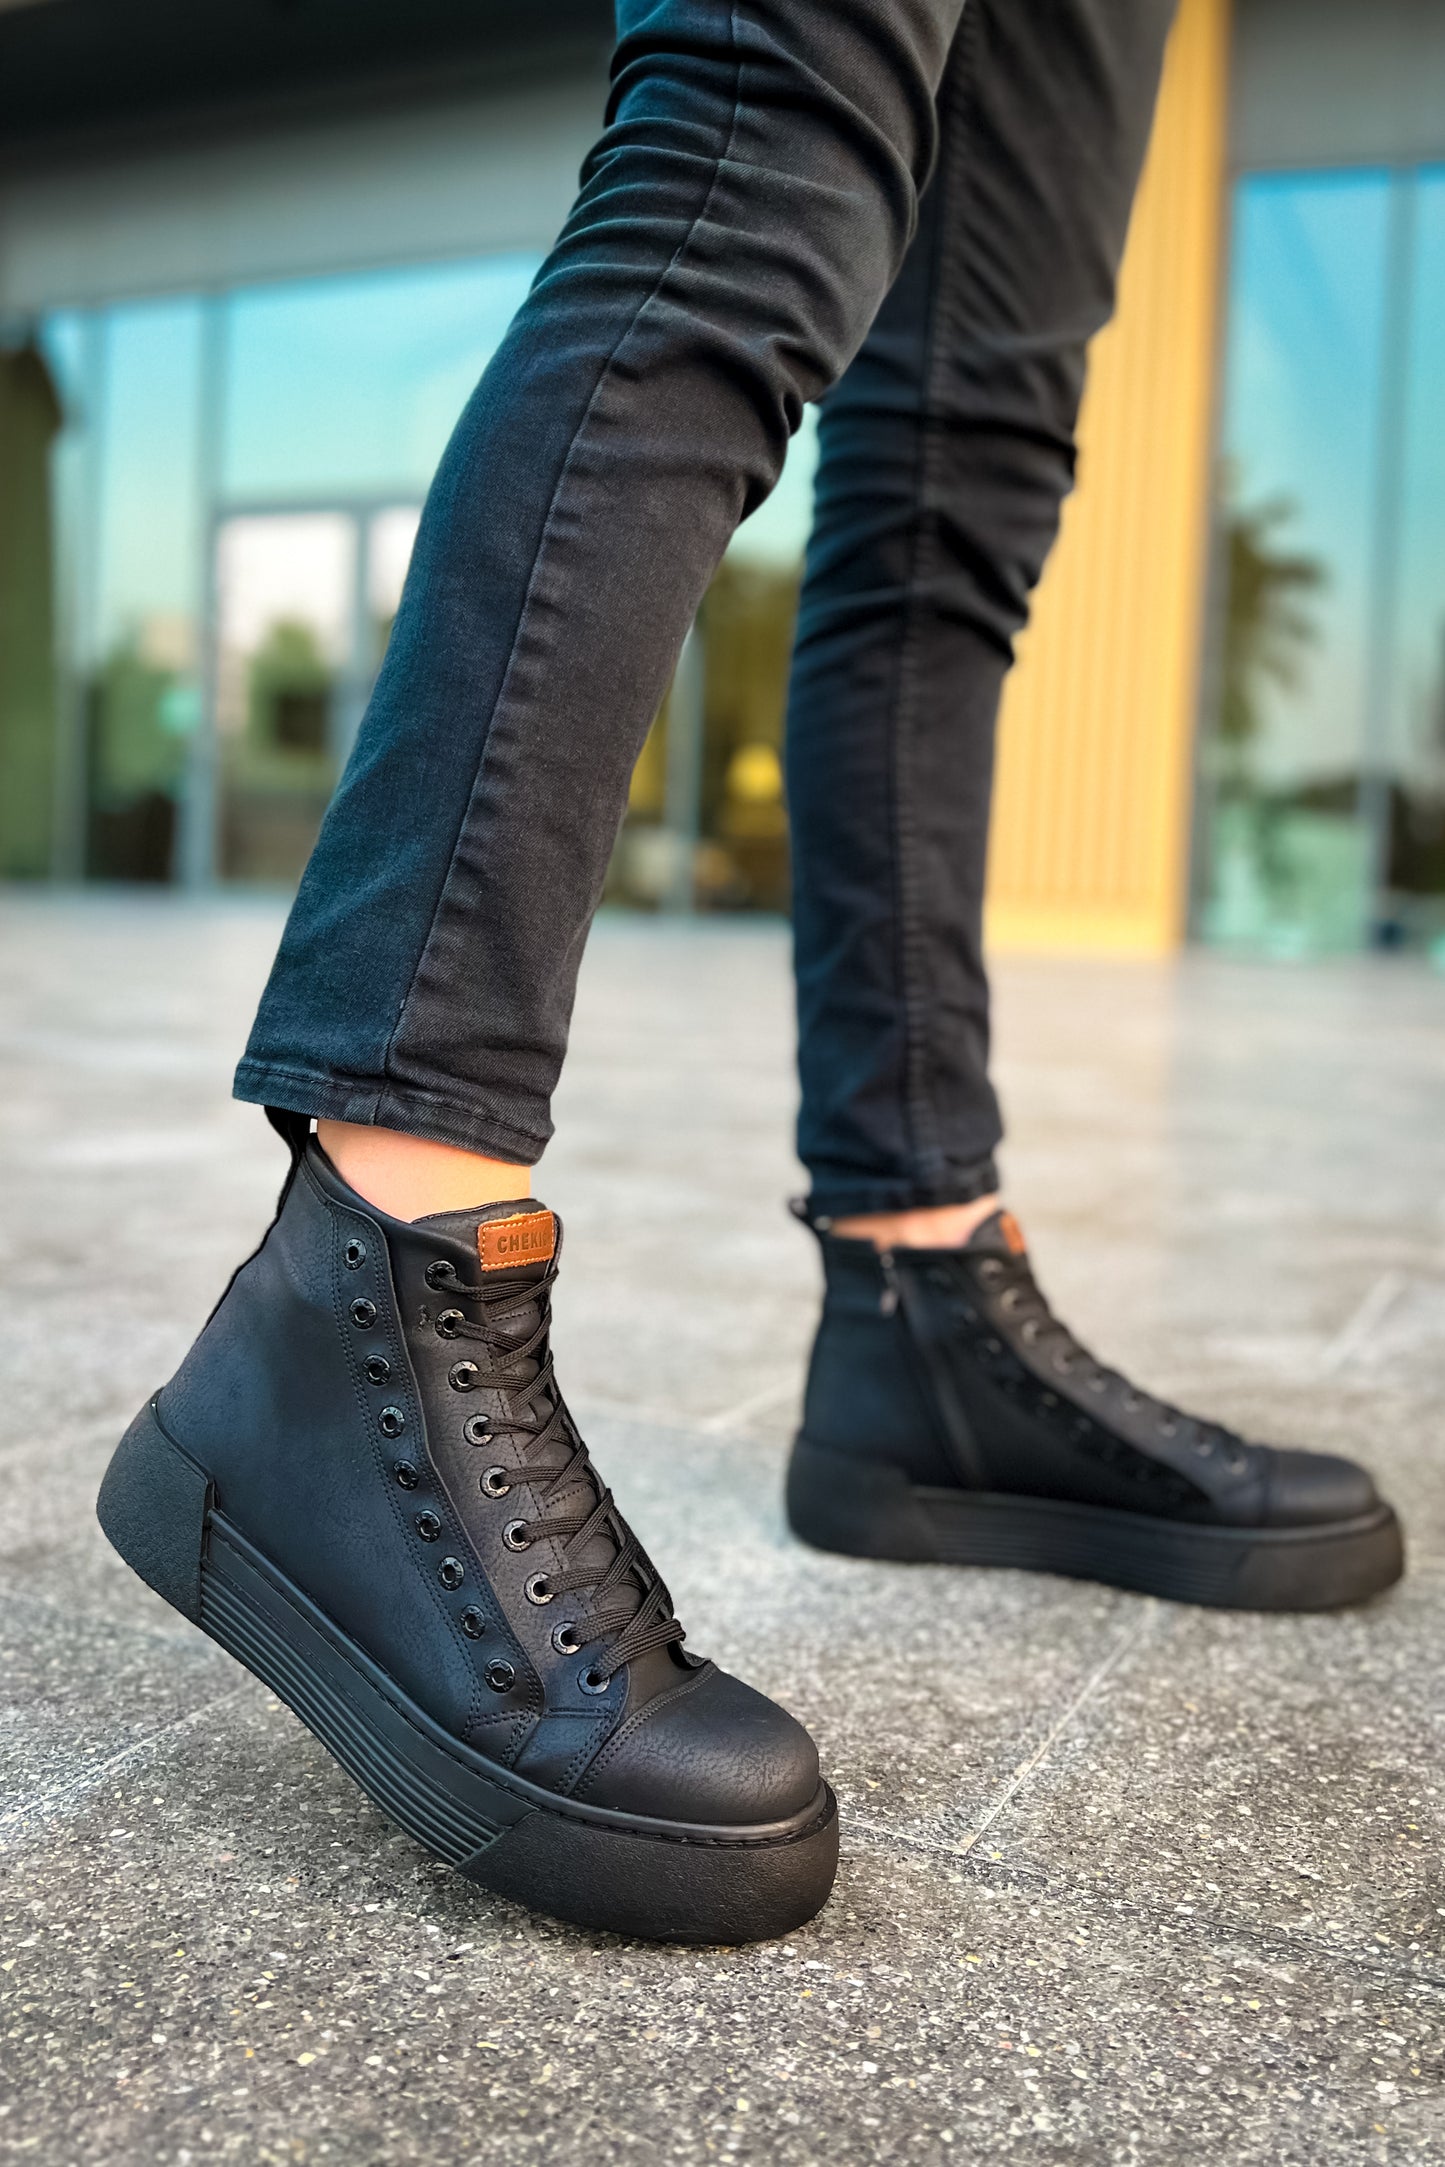 CH167 GST Blazer Men's Boots Black/Black